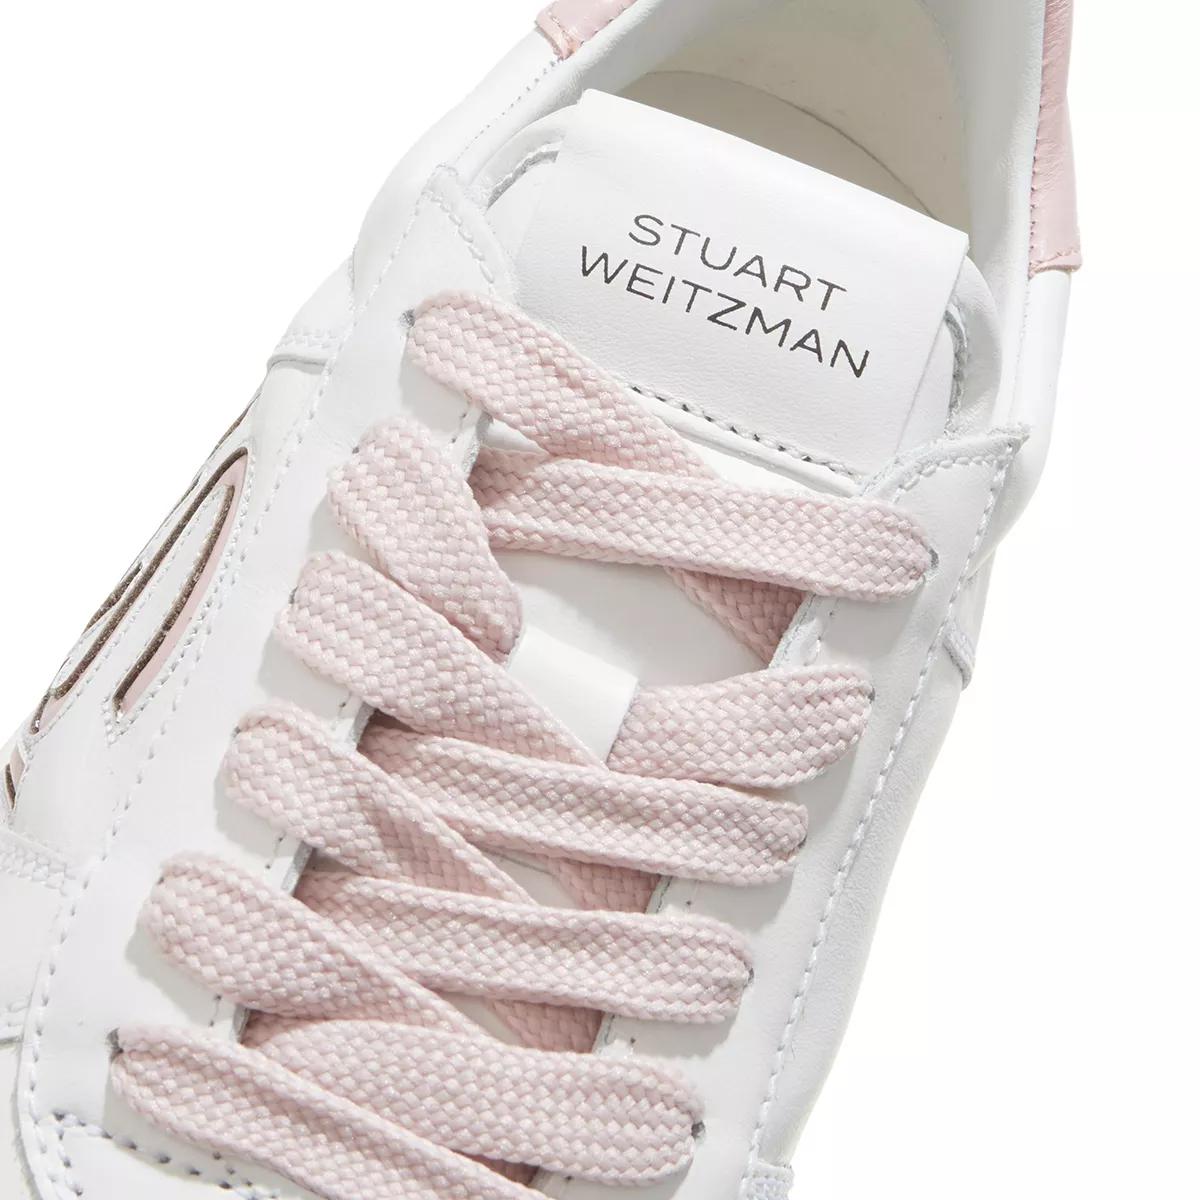 Stuart Weitzman Sneakers - SW COURTSIDE LOGO SNEAKER - Gr. 42 (EU) - in Weiß - für Damen von Stuart Weitzman